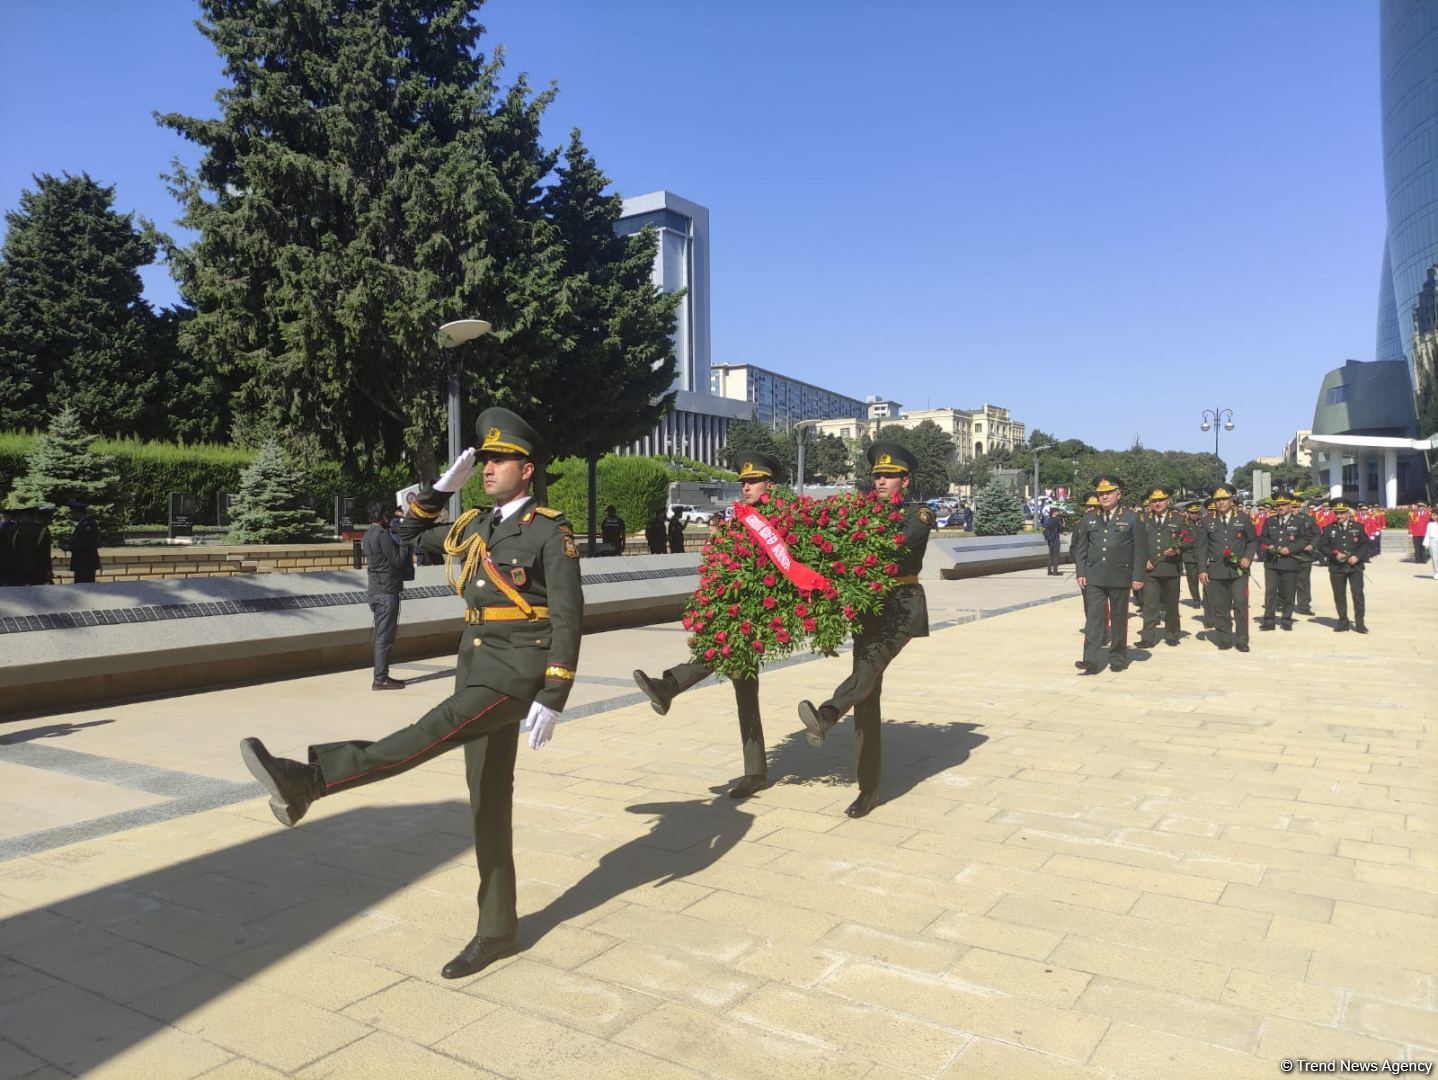 Проходят шествия в связи со 103-й годовщиной освобождения Баку от большевистско-дашнакской оккупации (ФОТО)